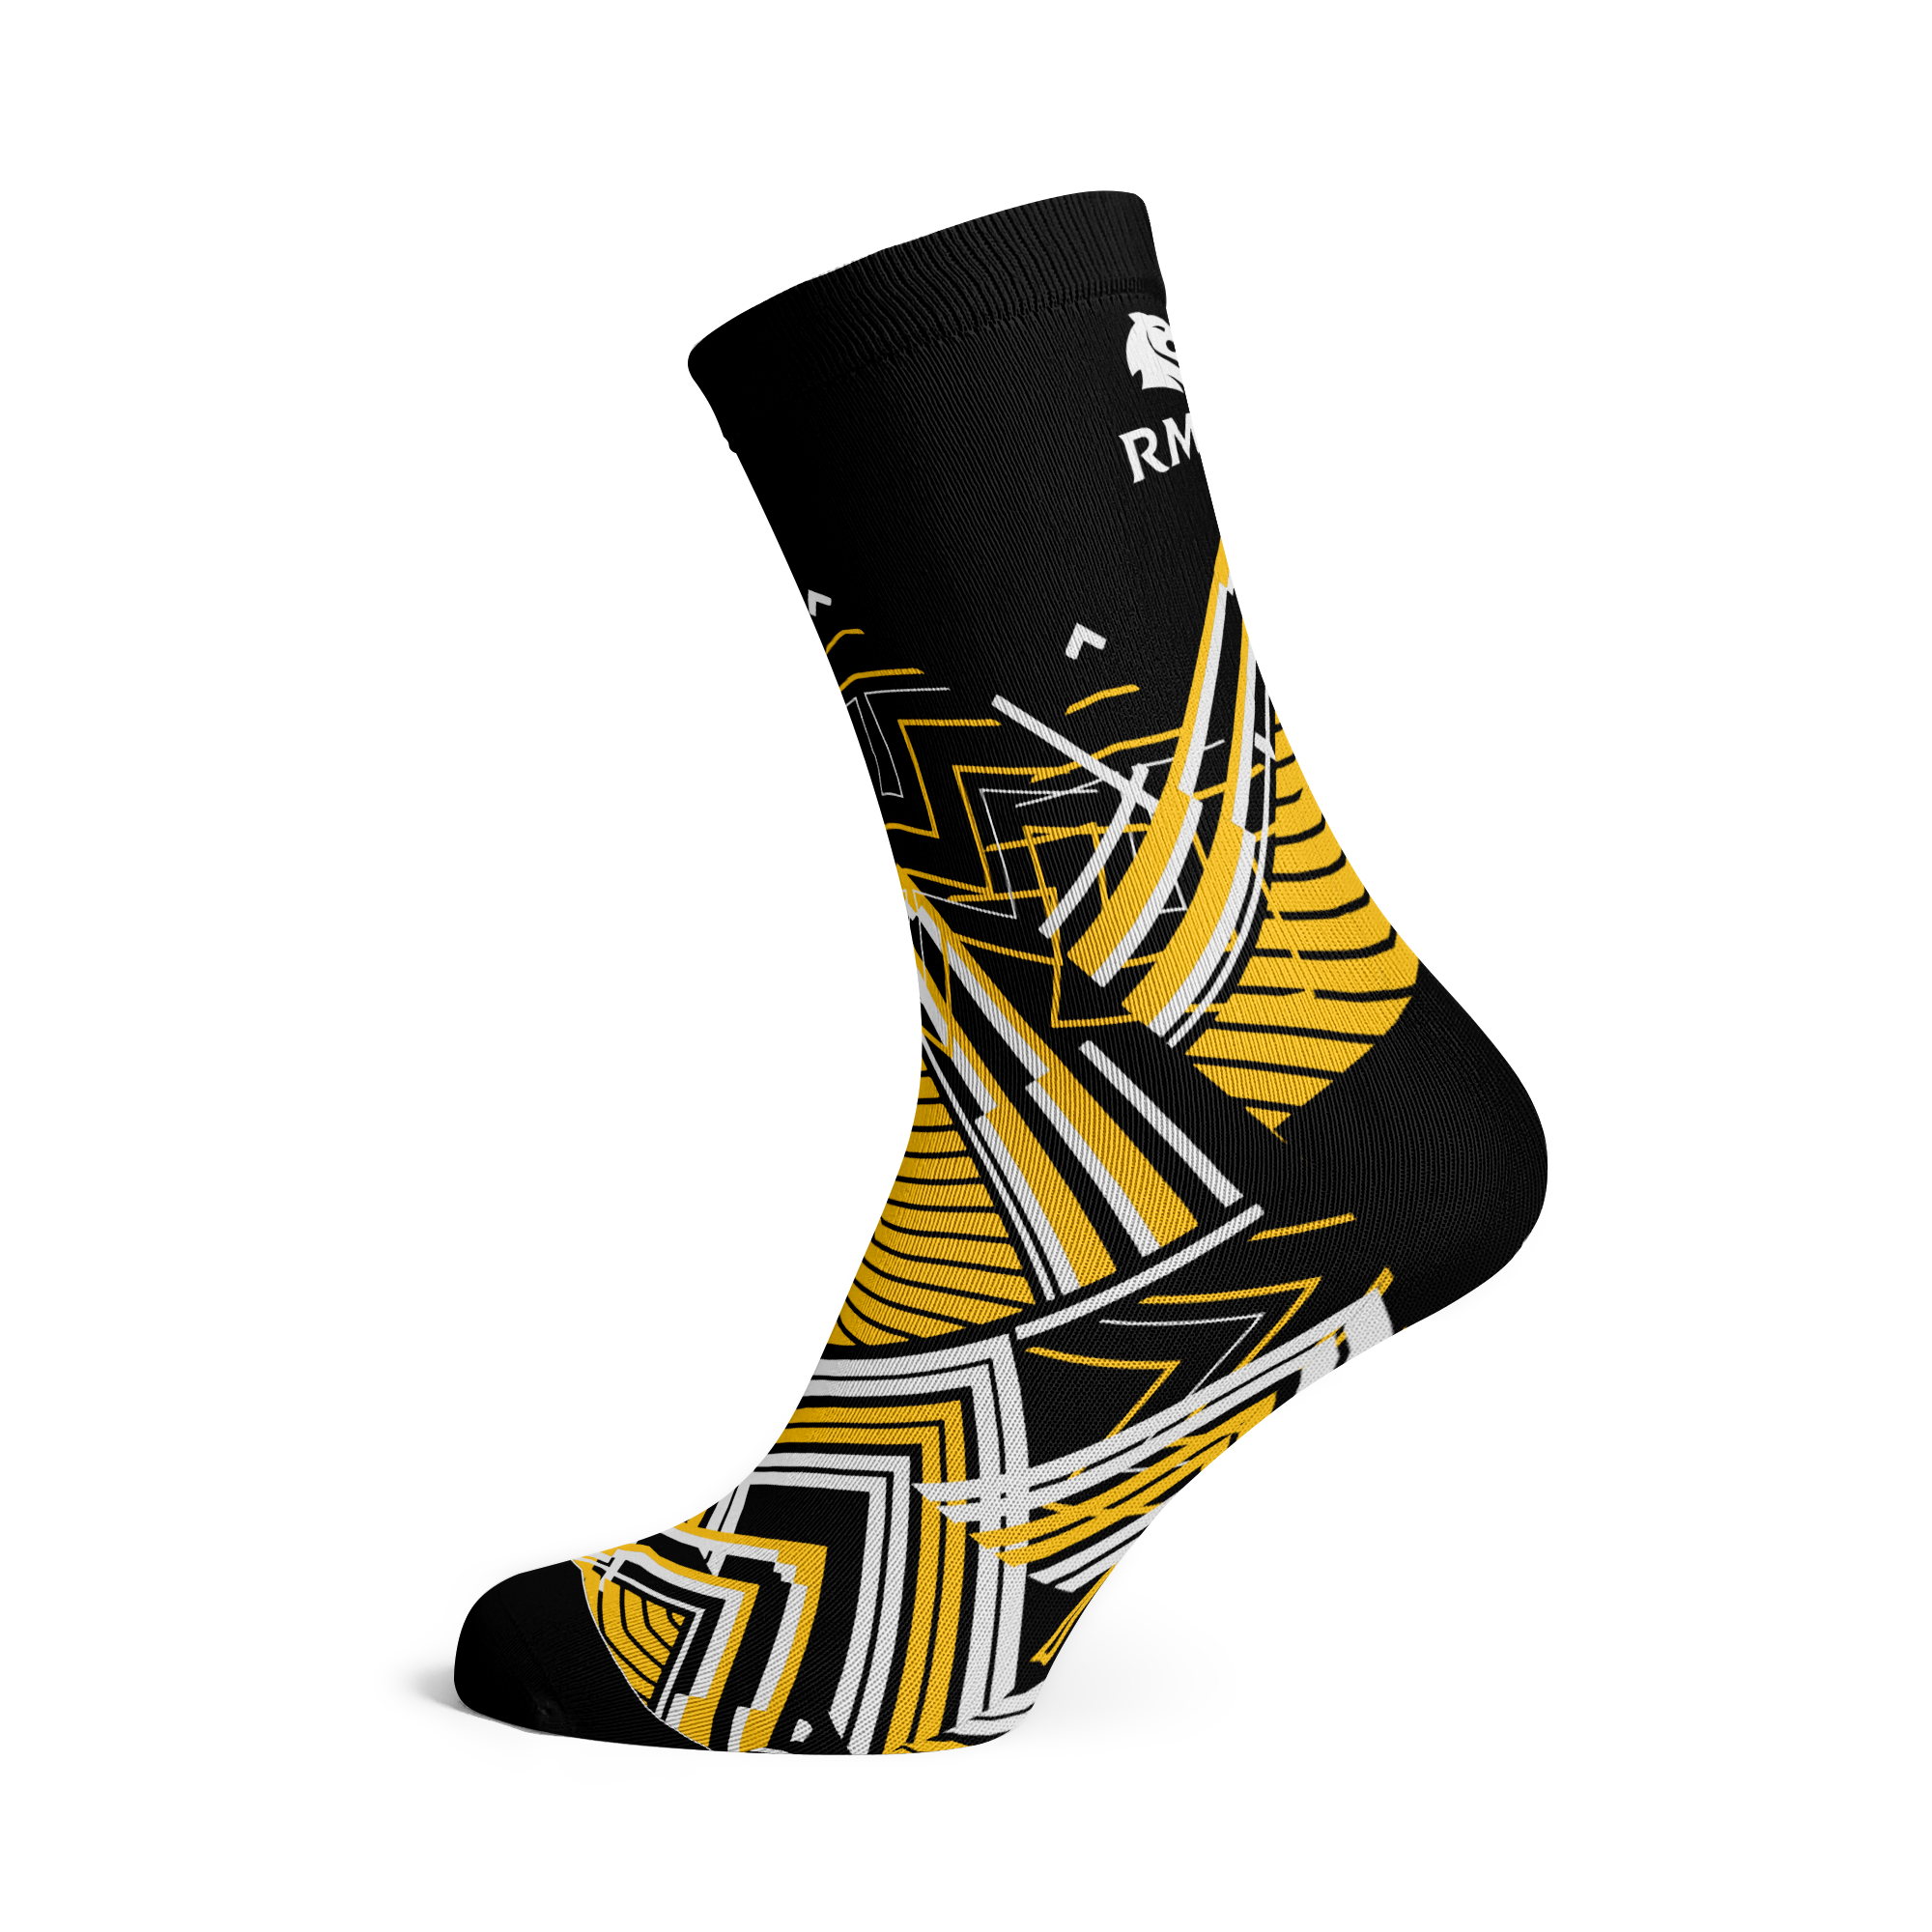 Custom Branded Corporate Socks